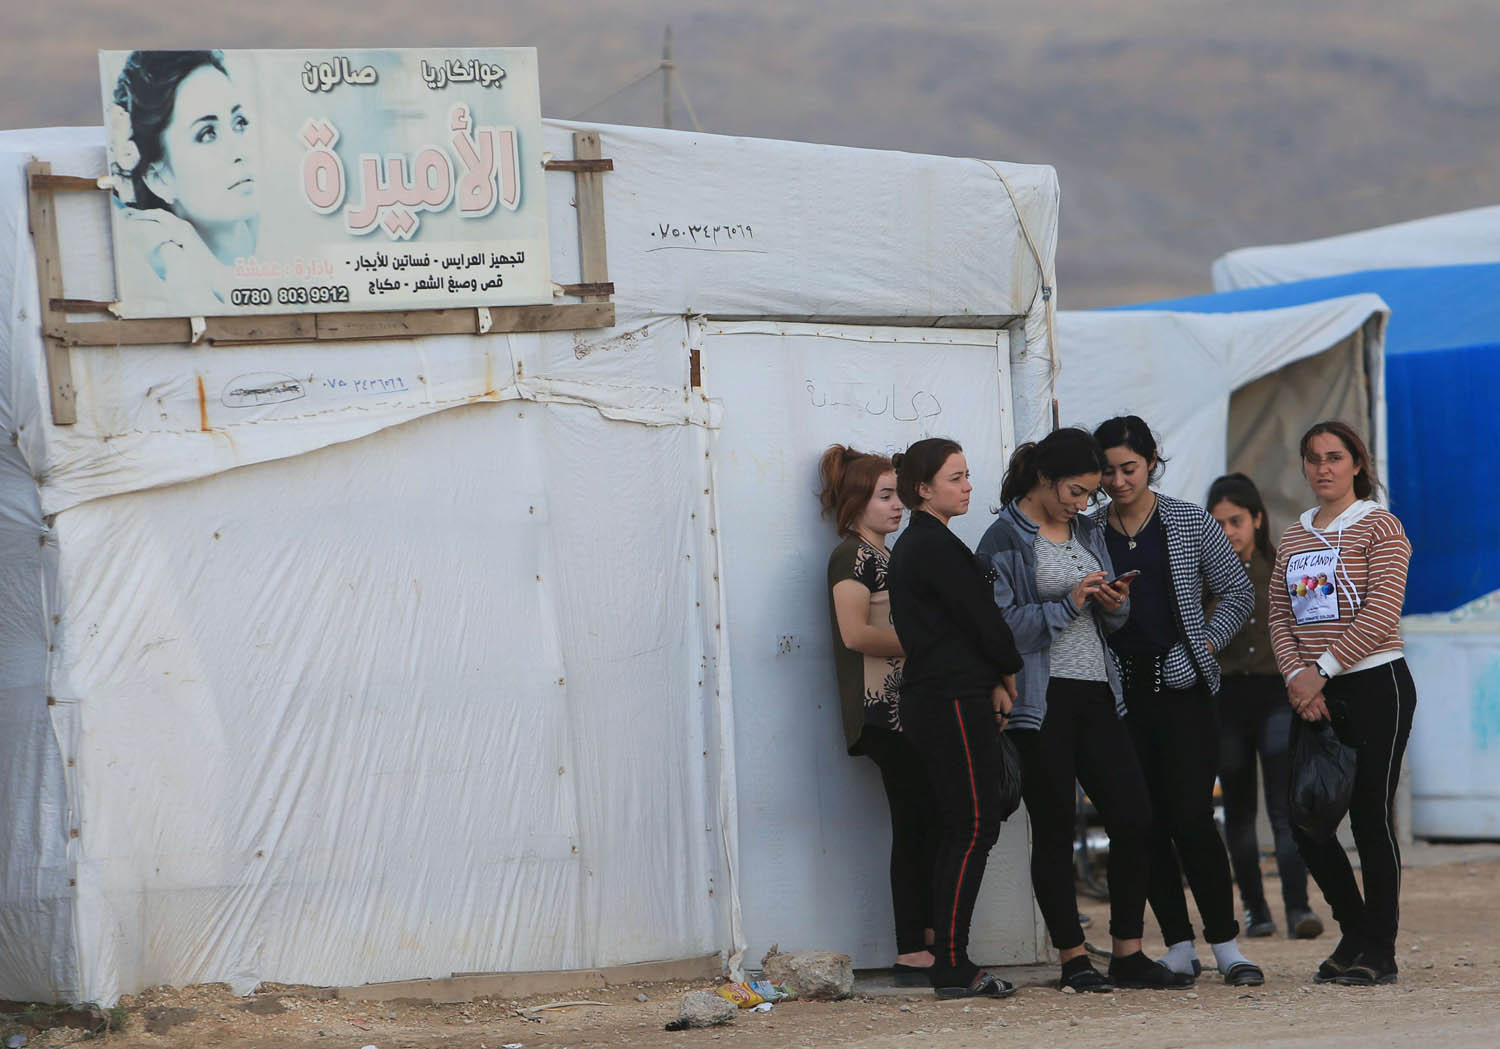 يزيديات في مخيم للنازحين بالقرب من دهوك في كردستان العراق